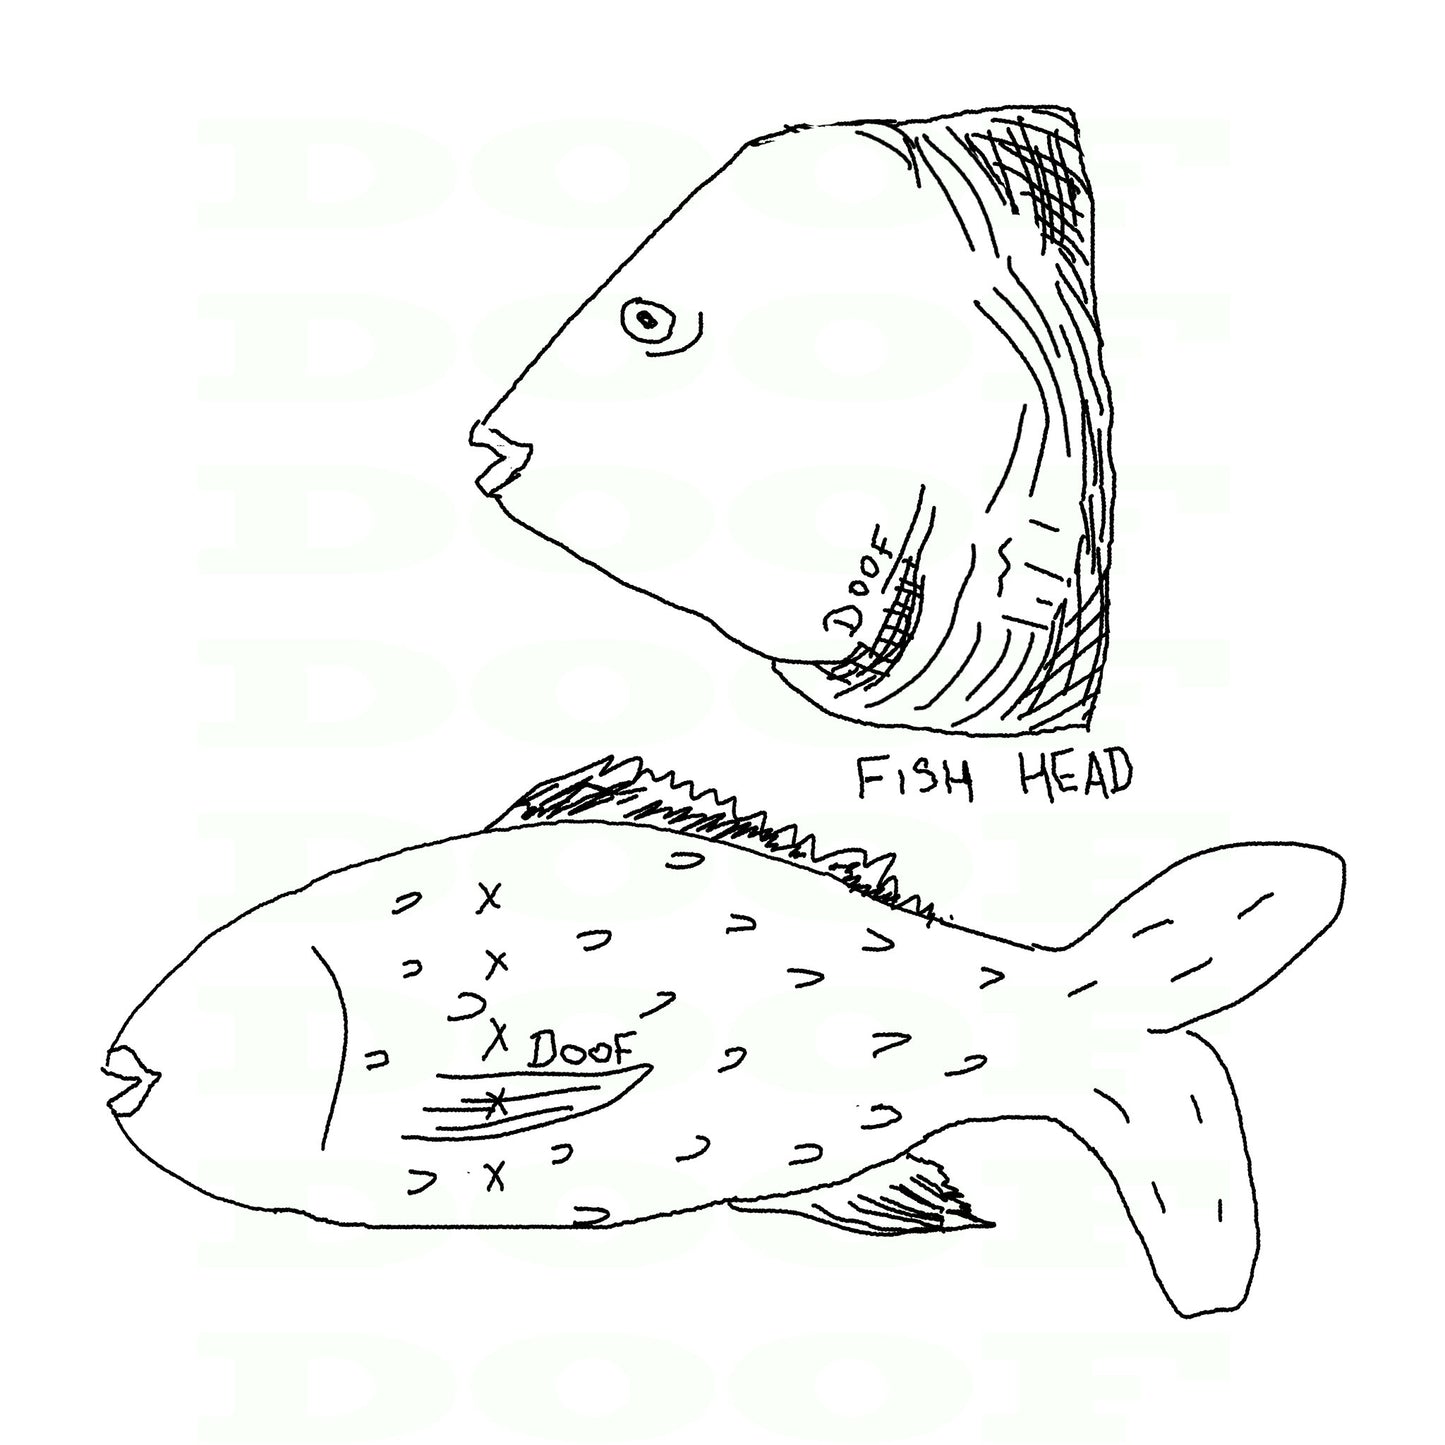  fish head Doof sketch